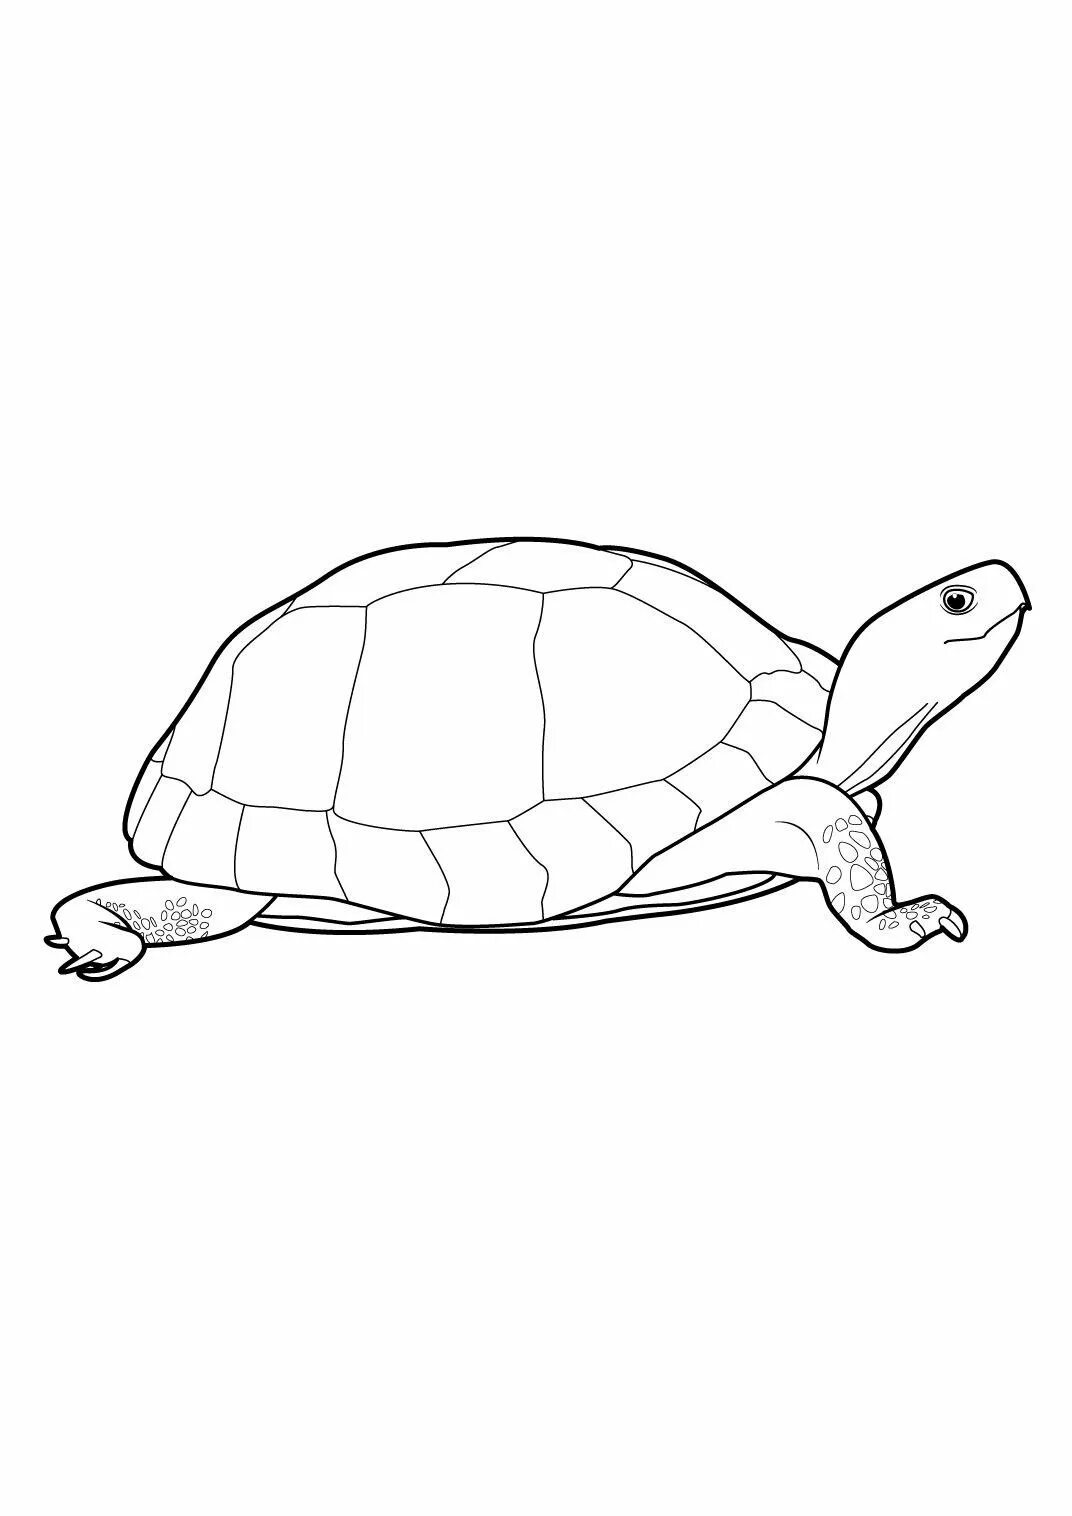 Черепаха рисунок. Раскраска черепаха. Черепашка рисунок. Нарисовать черепаху.